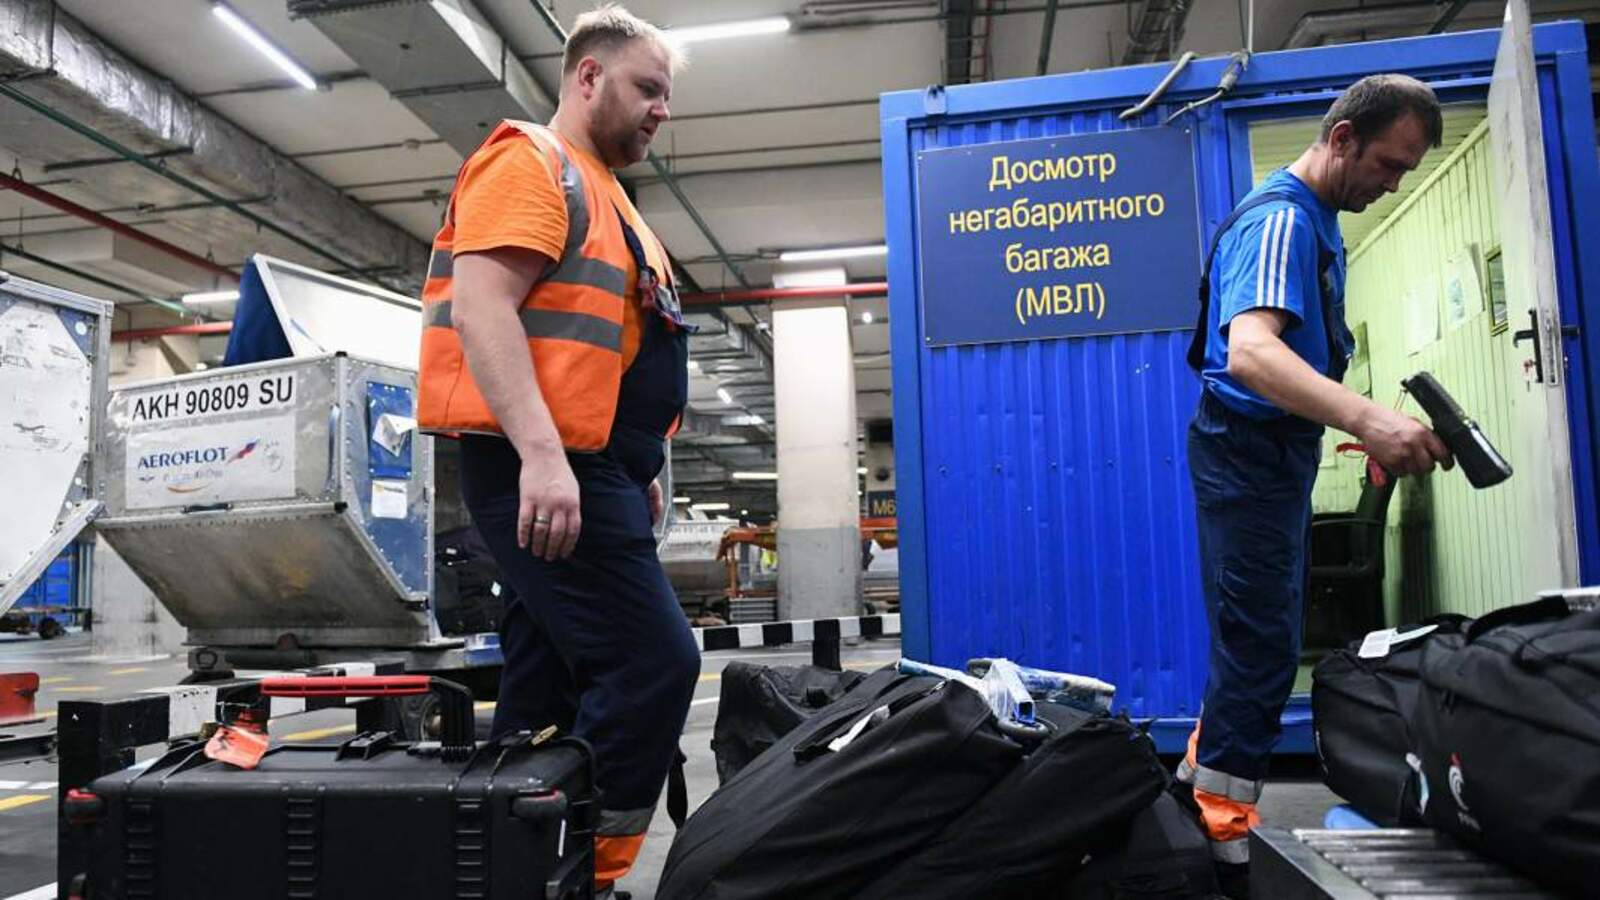 Мәскәү аэропорттарында юғары хәүеф кимәле урынлаштырылды